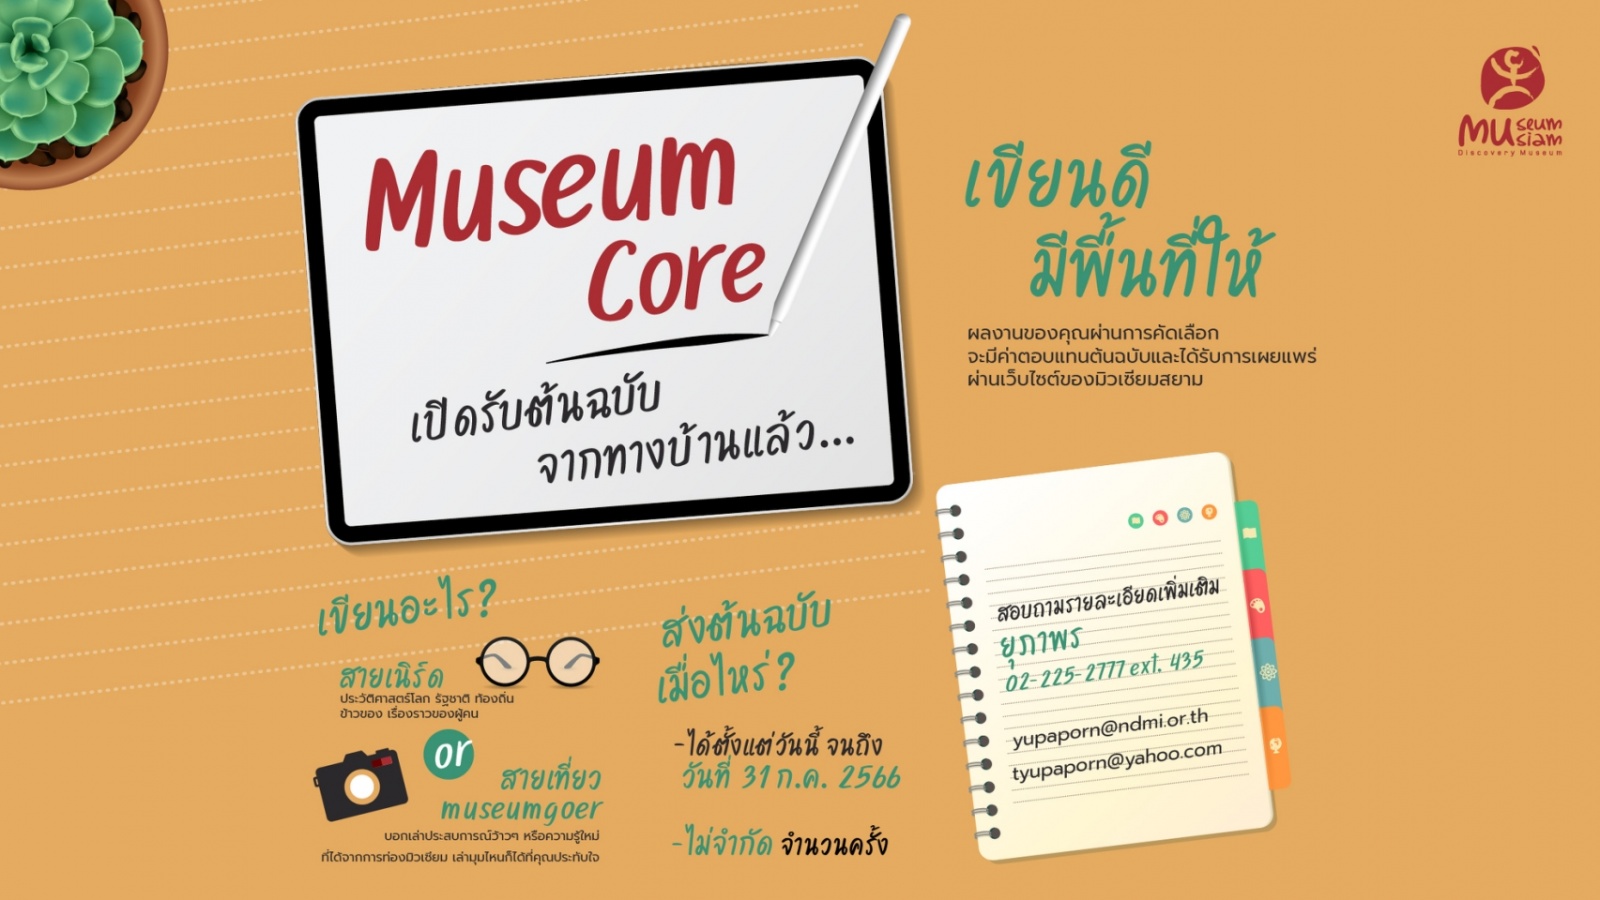 Museum Core เปิดรับต้นฉบับจากทางบ้านแล้ว...